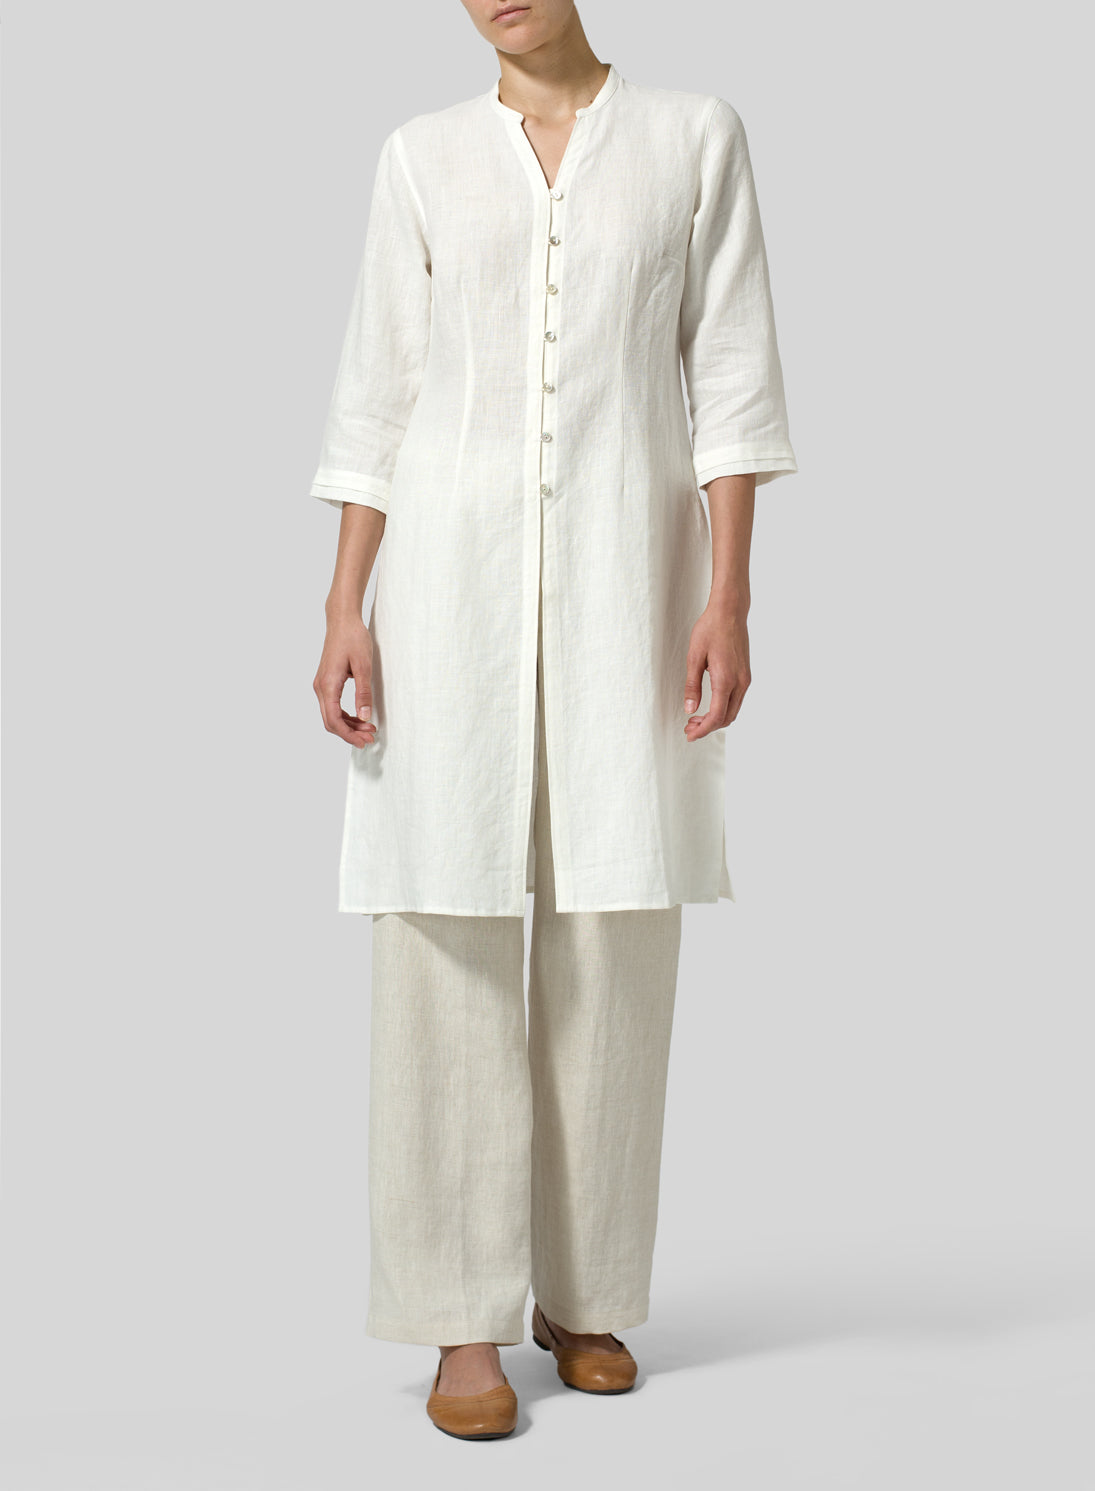 Cotton Linen V-Neck Stand Collar Long Shirt - boddysize